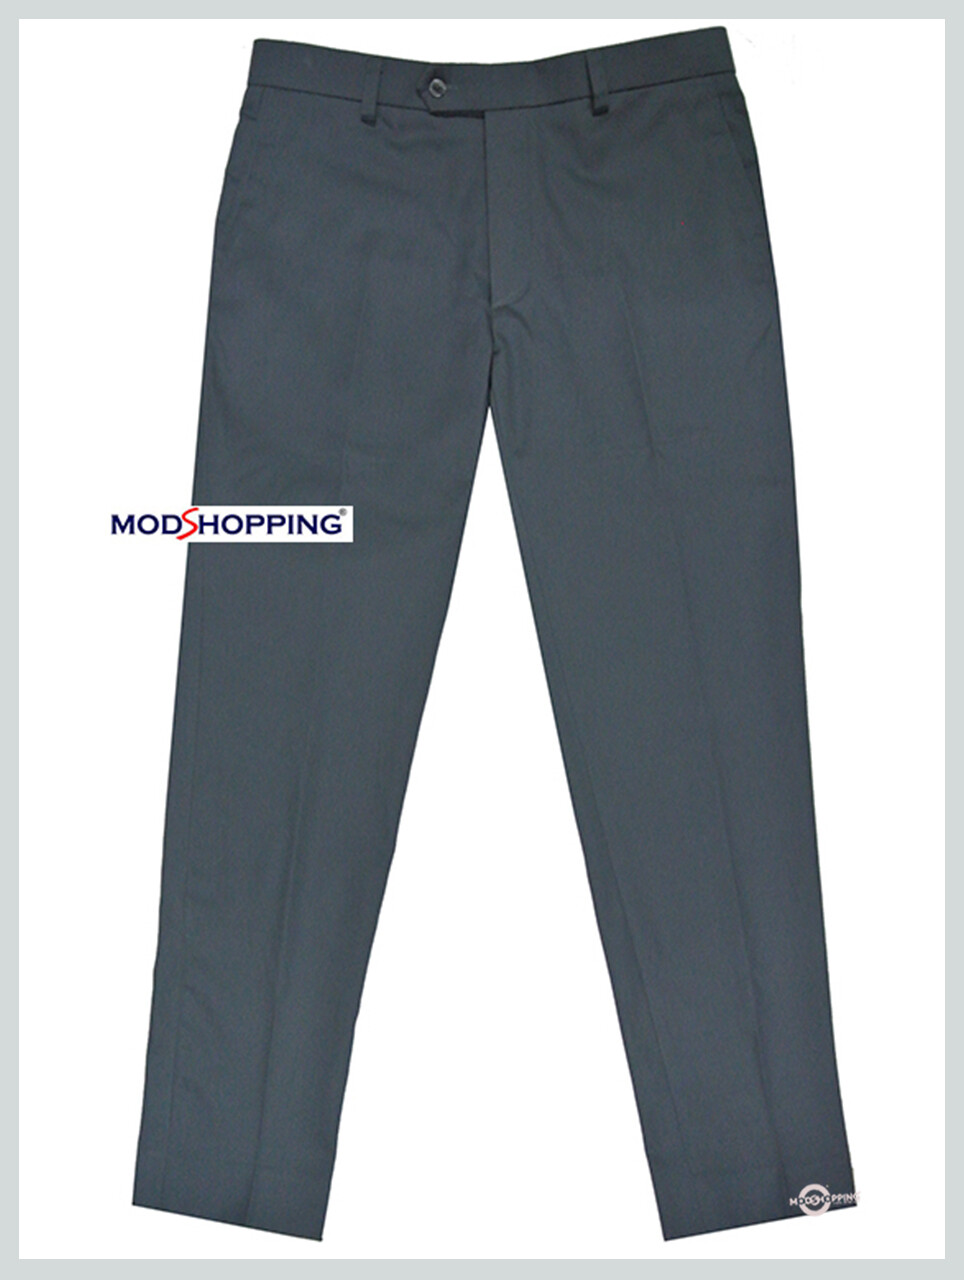 Sta Press Trousers| 60s Mod Classic Dim Grey  Mens Trouser